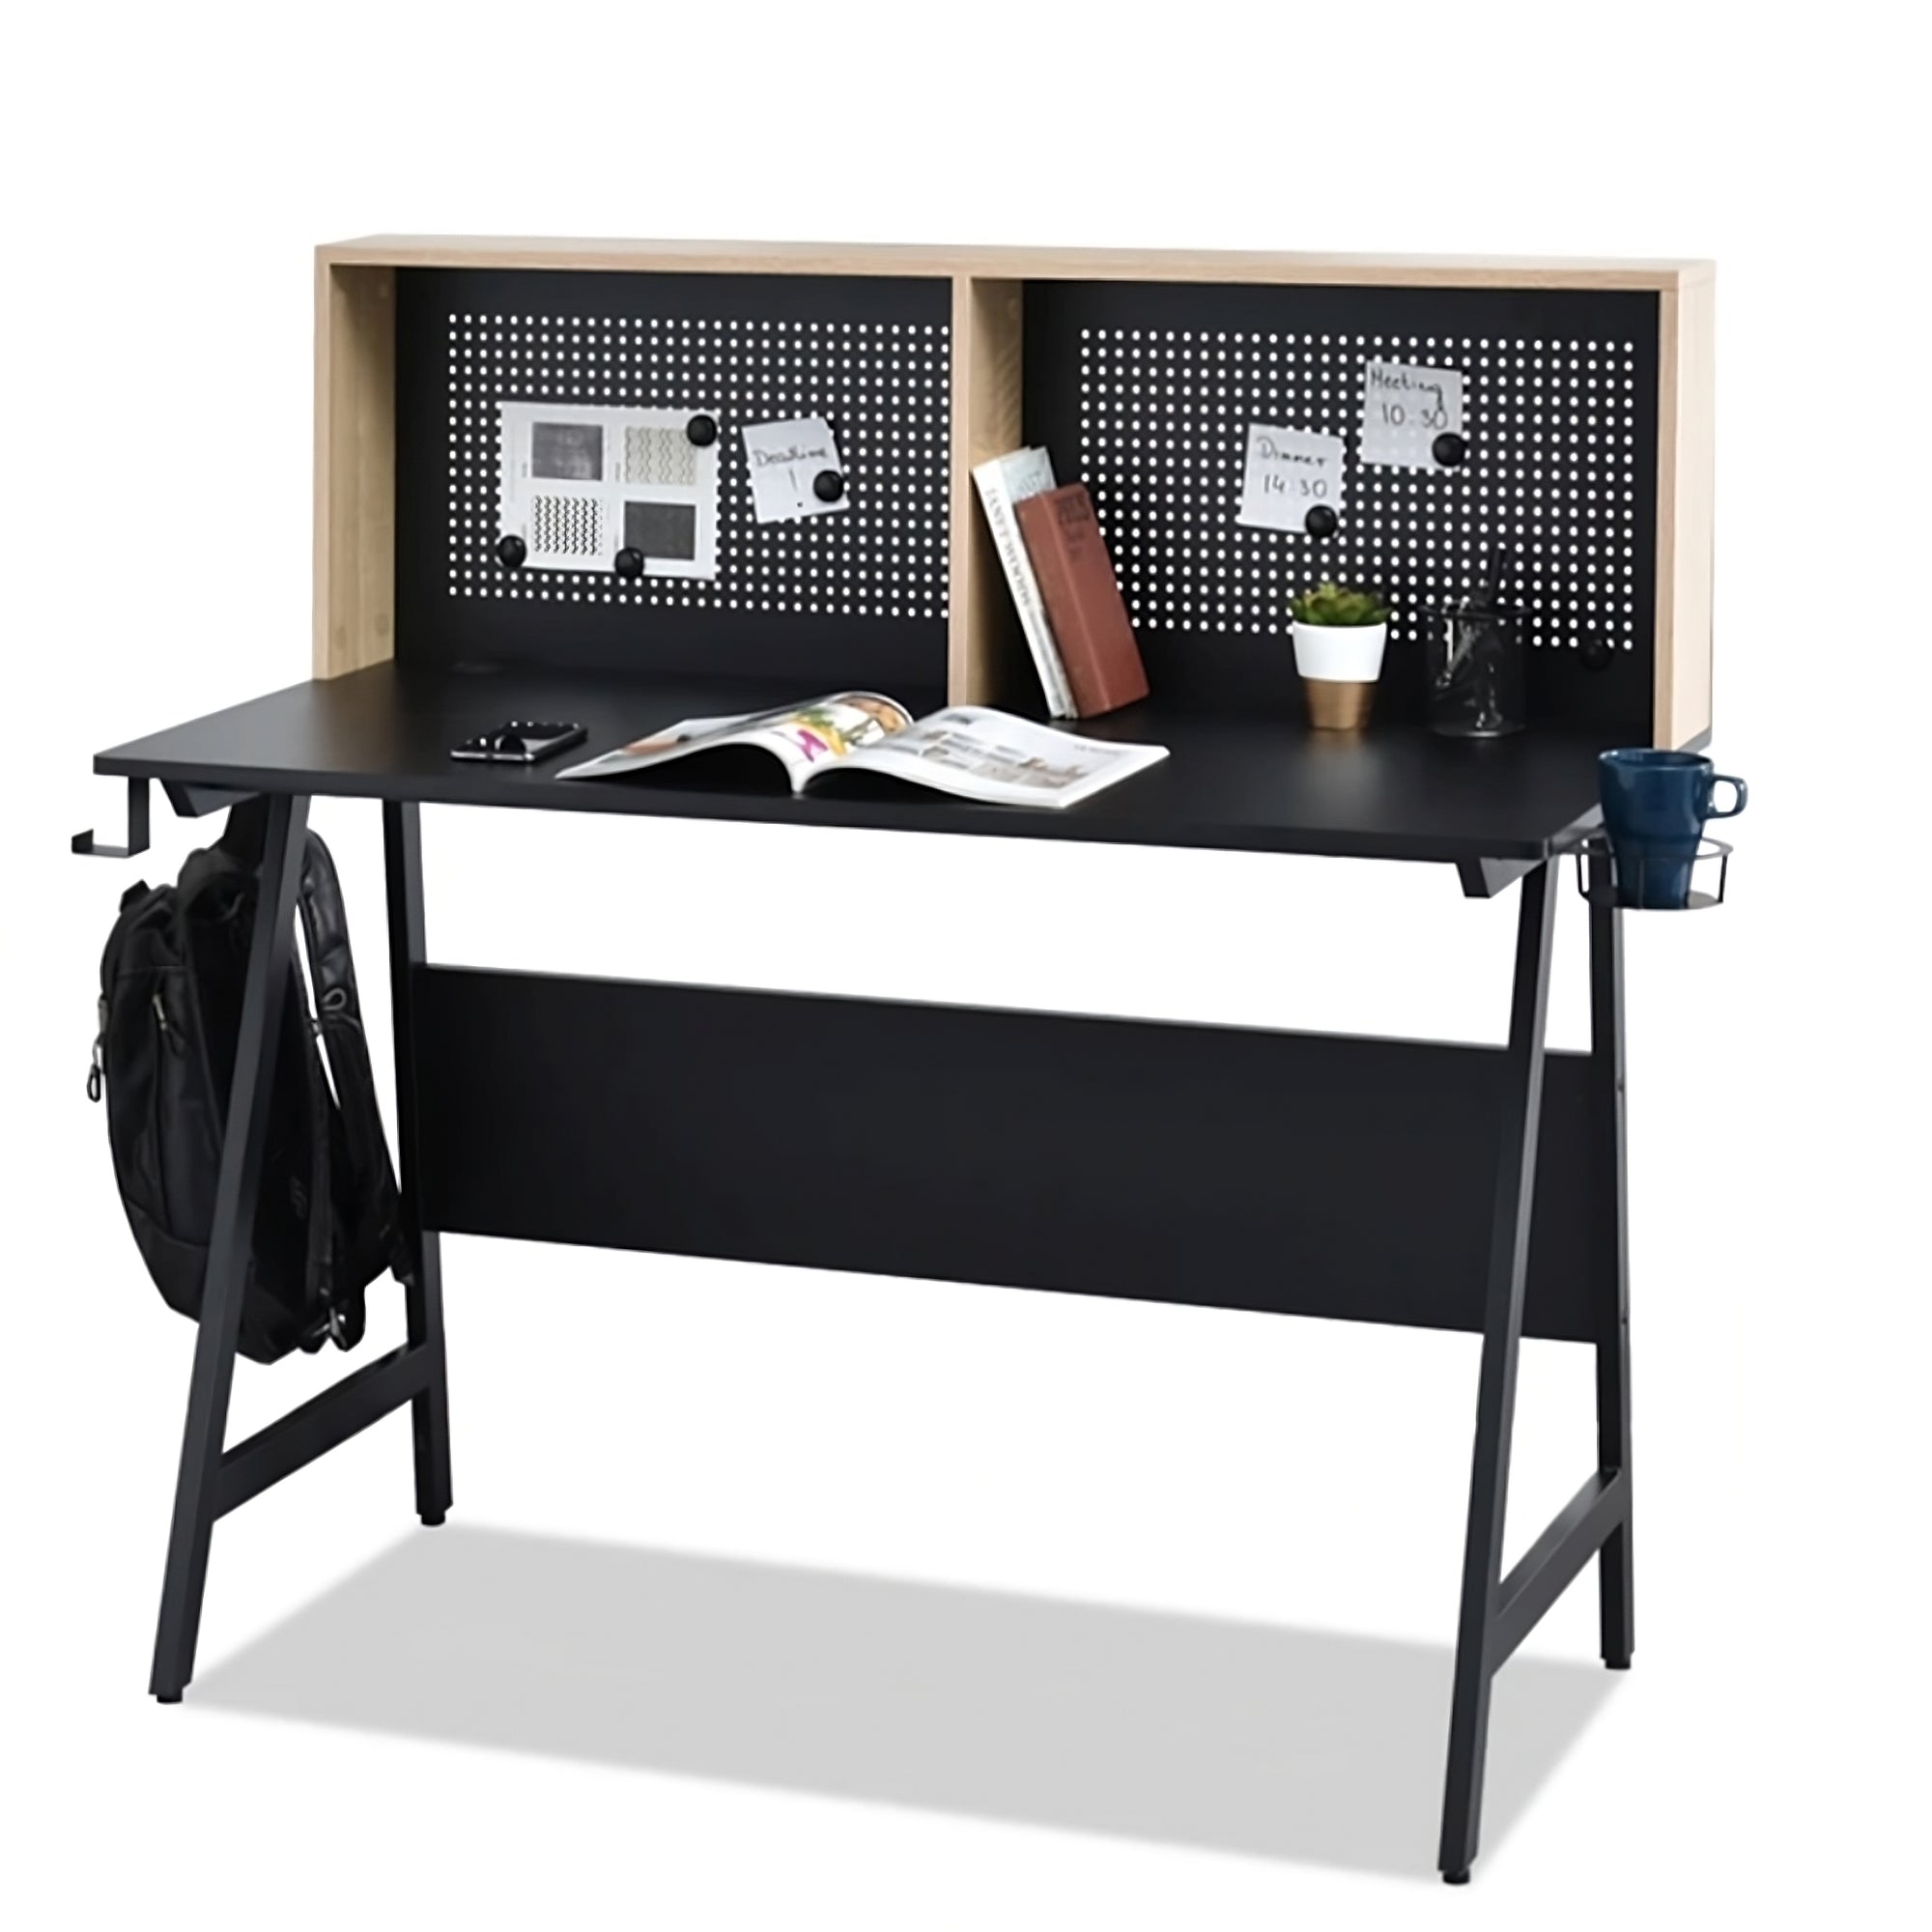 coman desk black with accessories